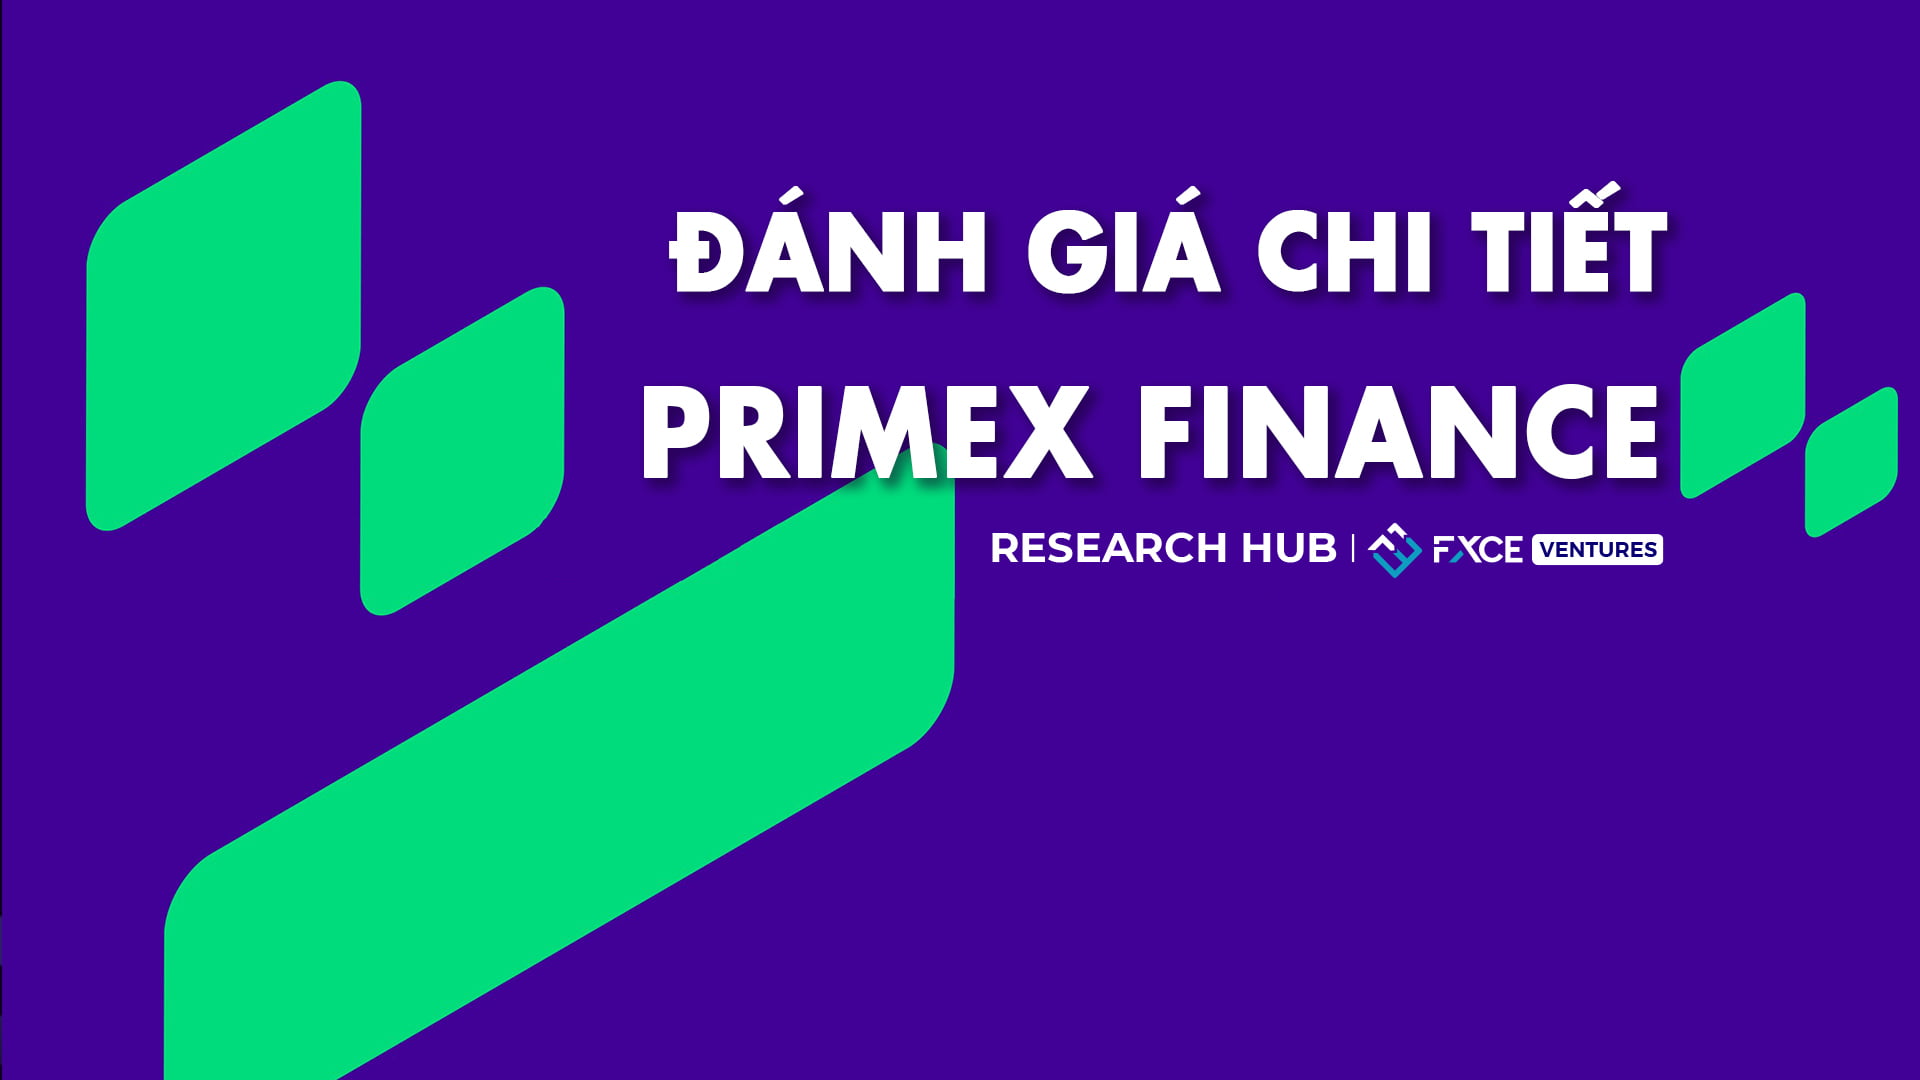 Tìm hiểu về Primex Finance - Giao thức thanh khoản môi giới phi tập trung